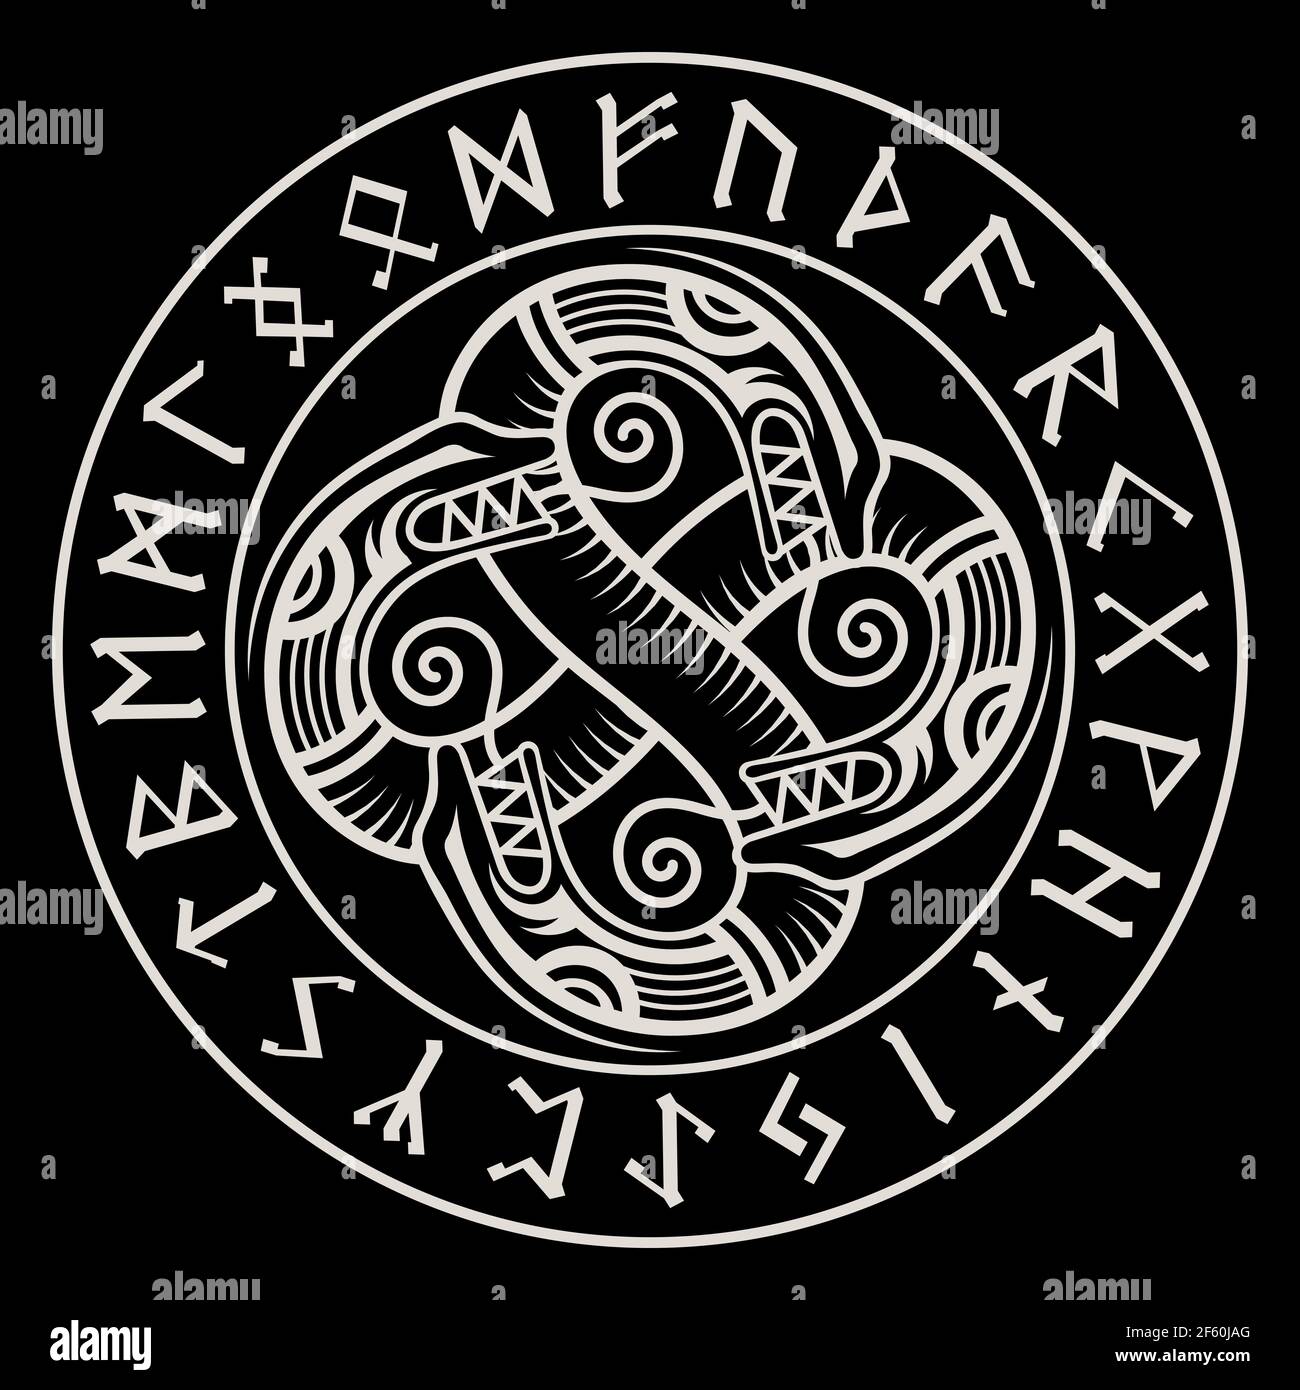 Design vichingo scandinavo. Antico drago decorativo in stile celtico, illustrazione di un nodo scandinavo e rune settentrionali Illustrazione Vettoriale